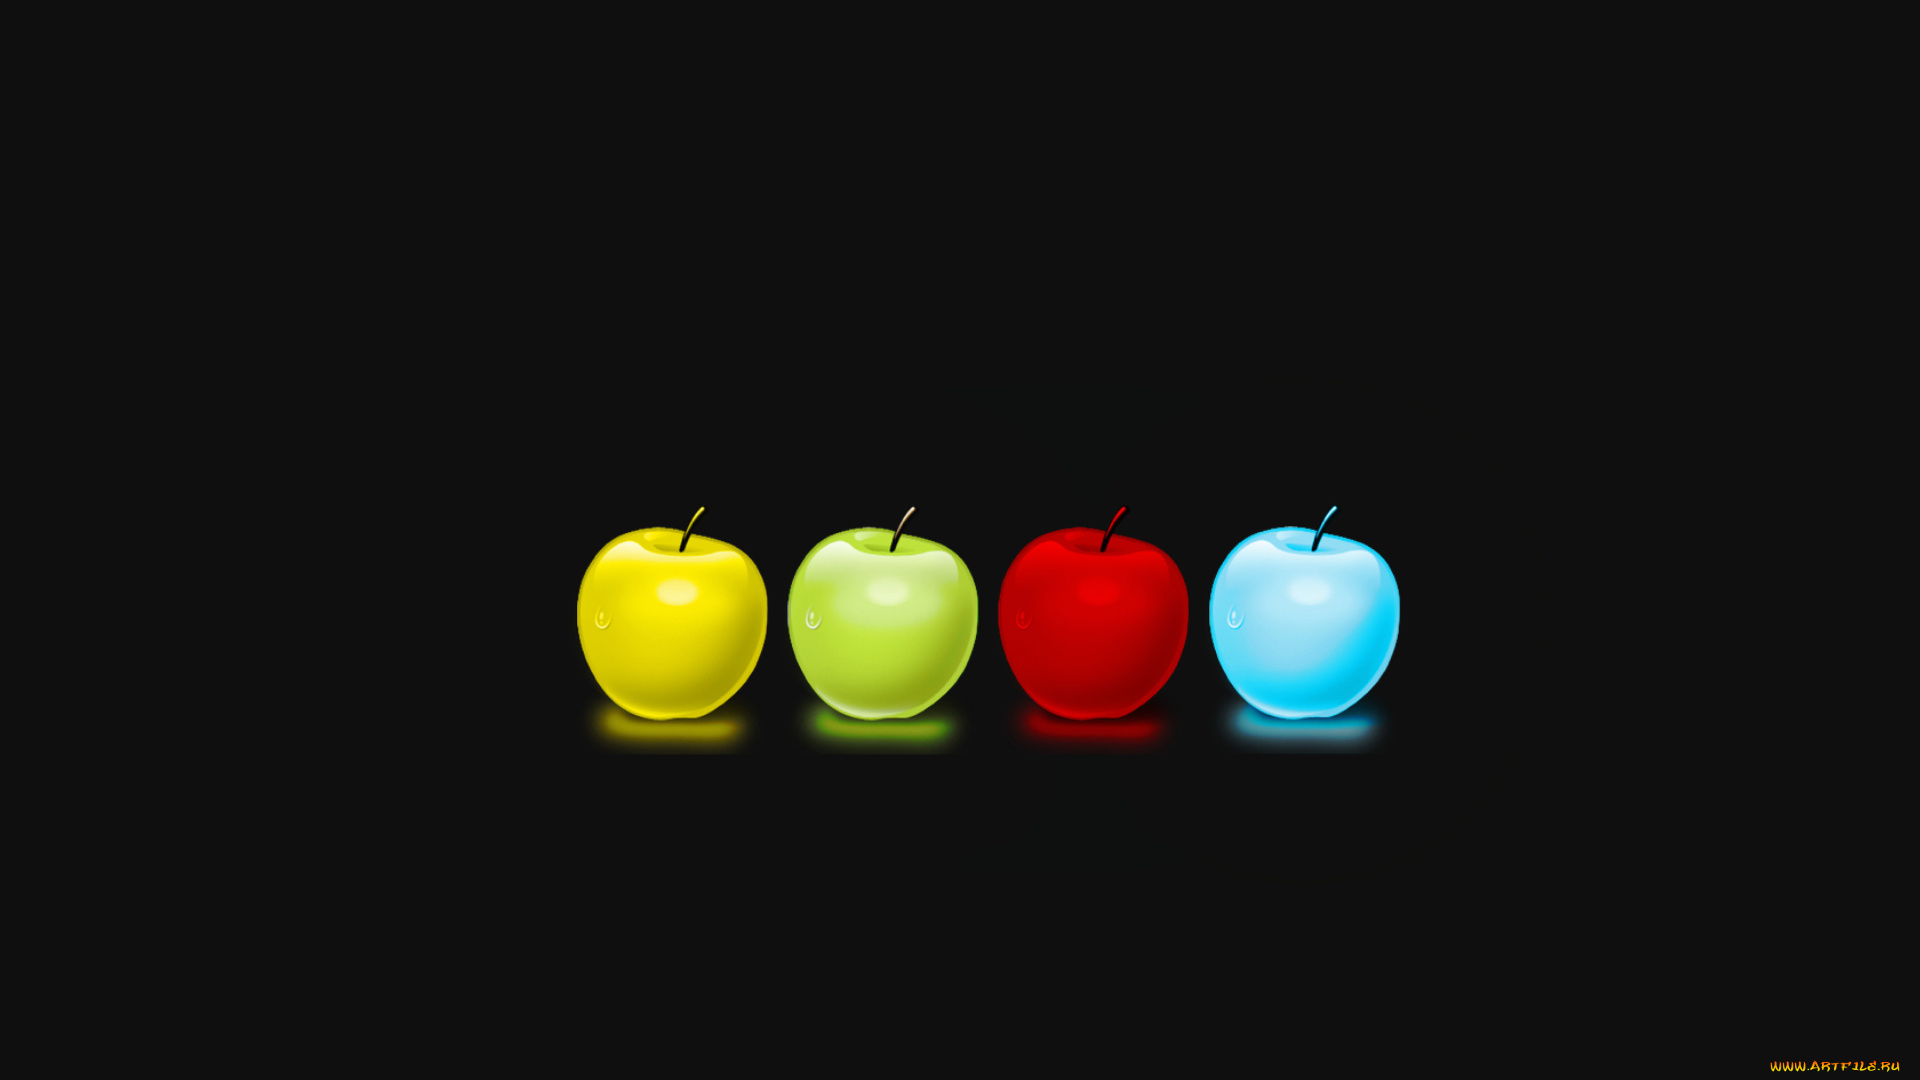 3д, графика, другое, фон, тёмный, цвета, капли, яблока